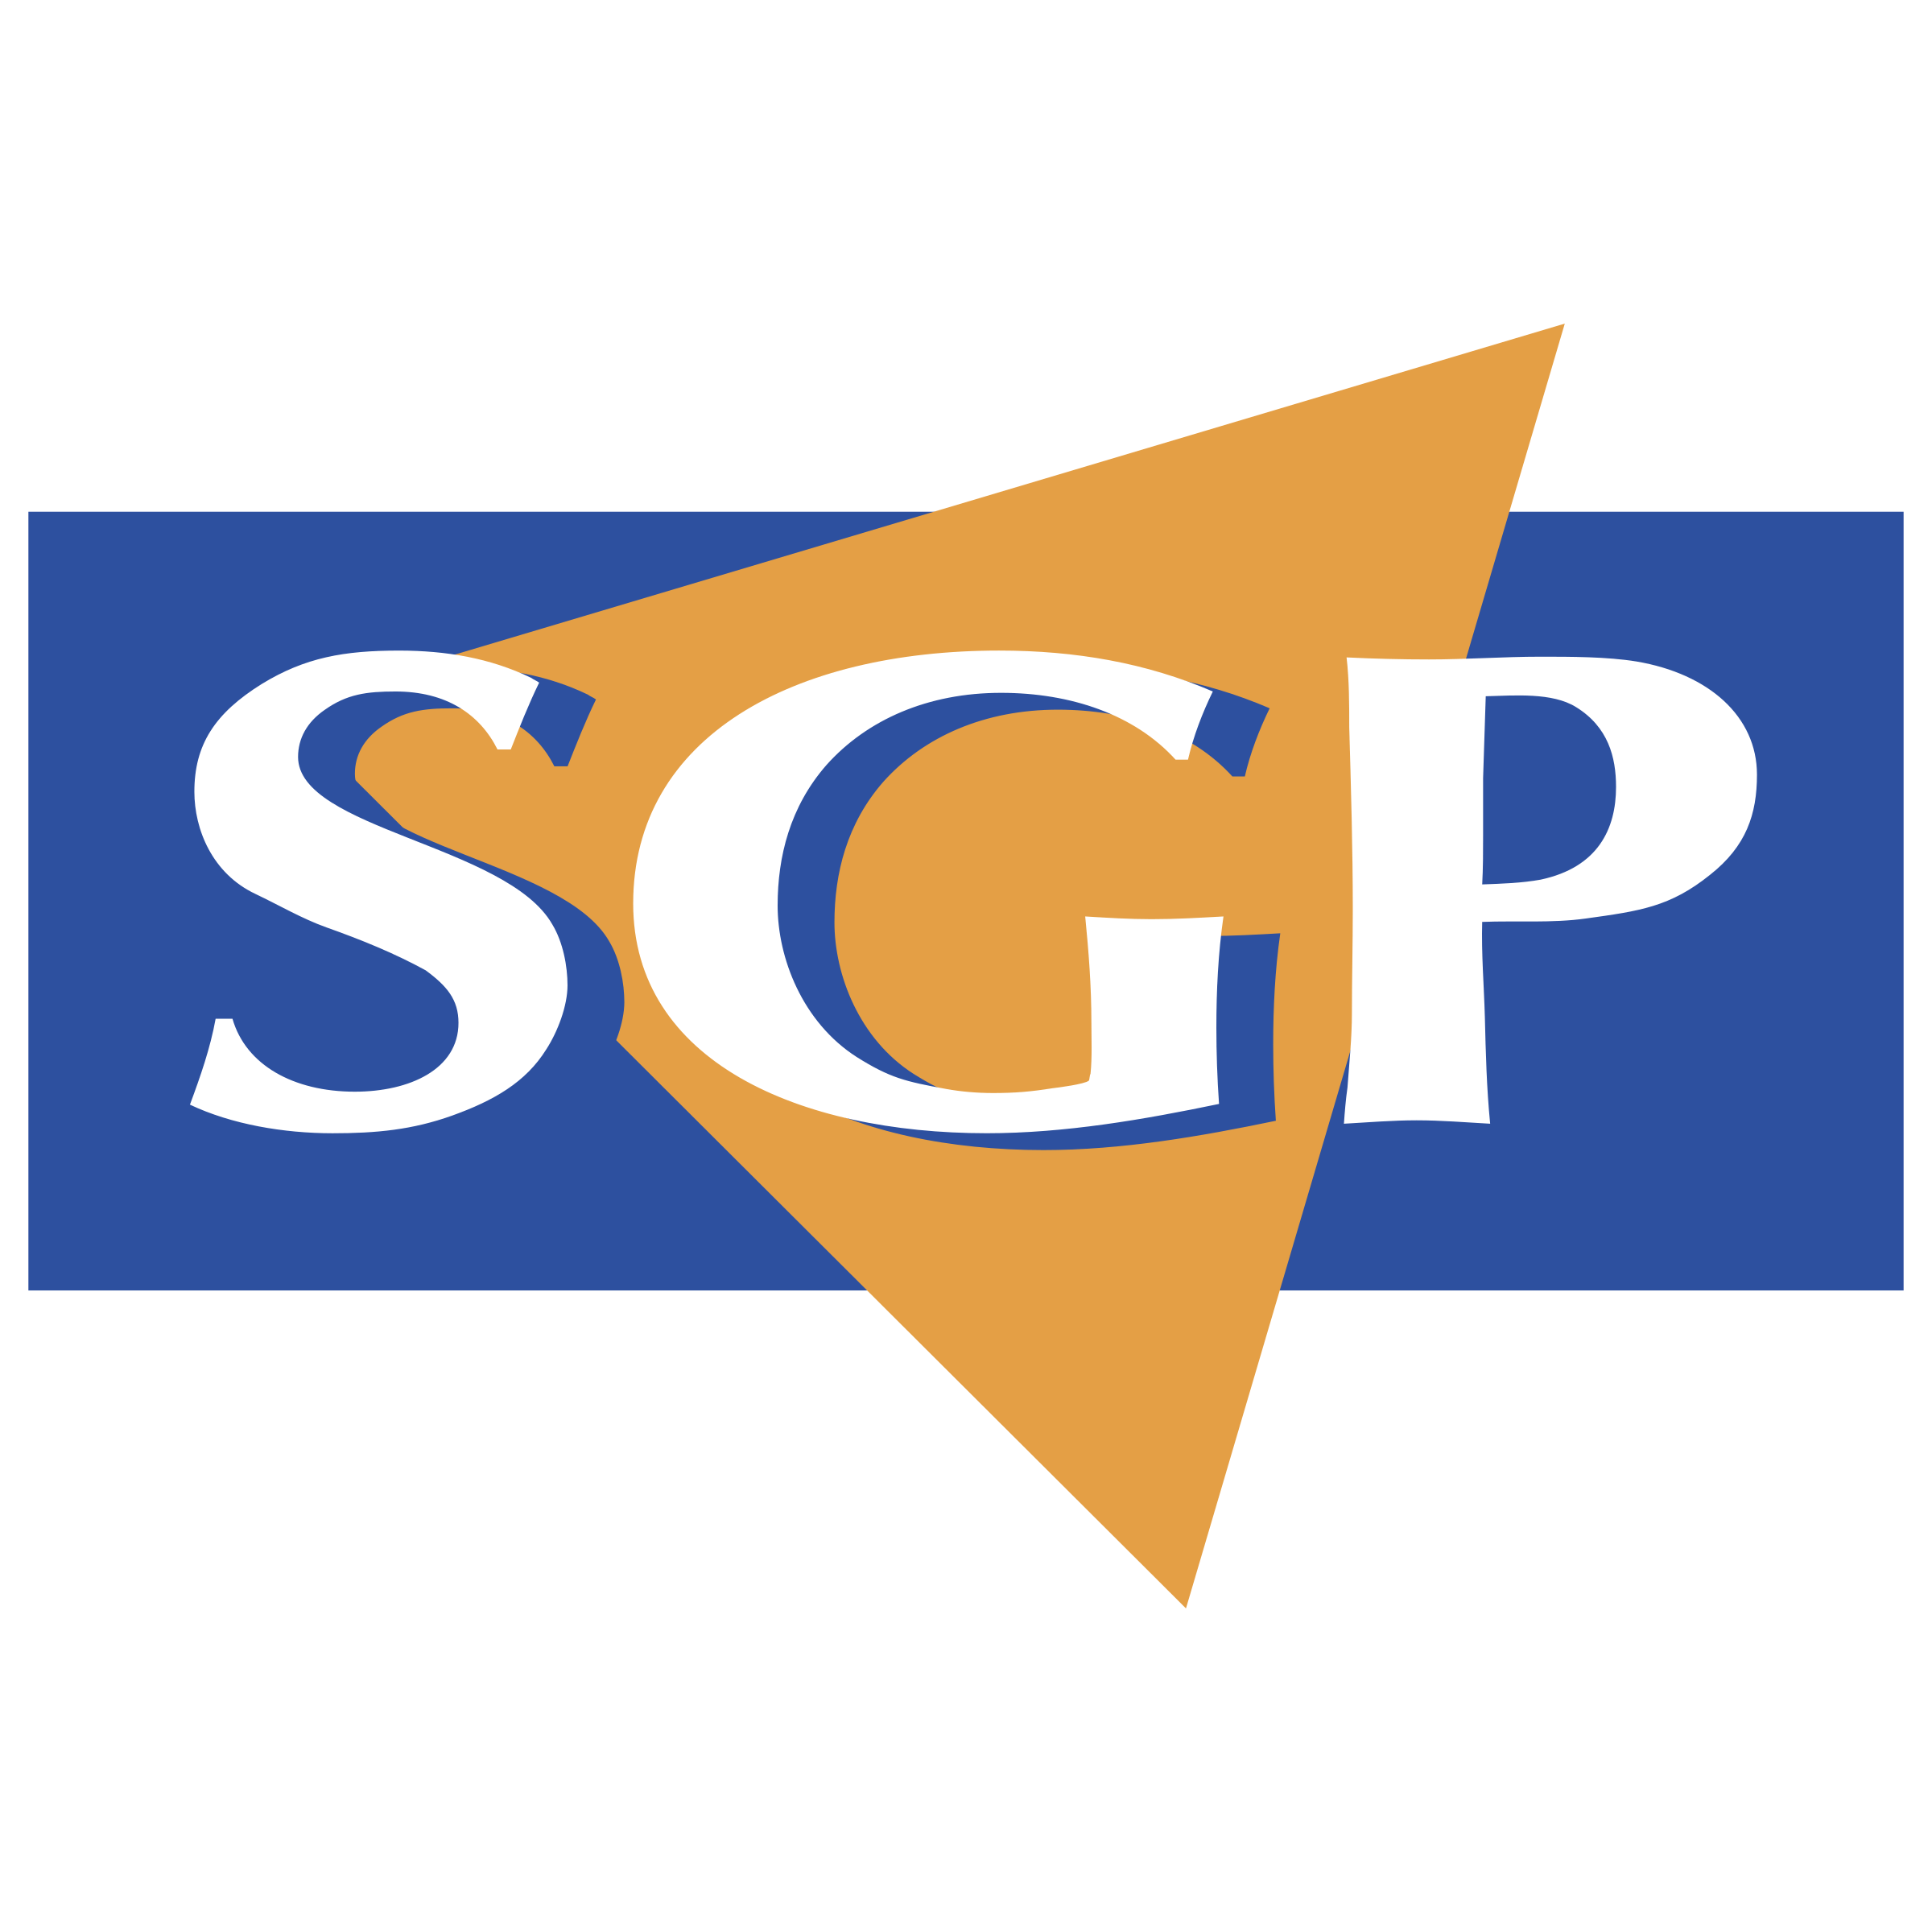 SGP Logo - SGP Logo PNG Transparent & SVG Vector - Freebie Supply